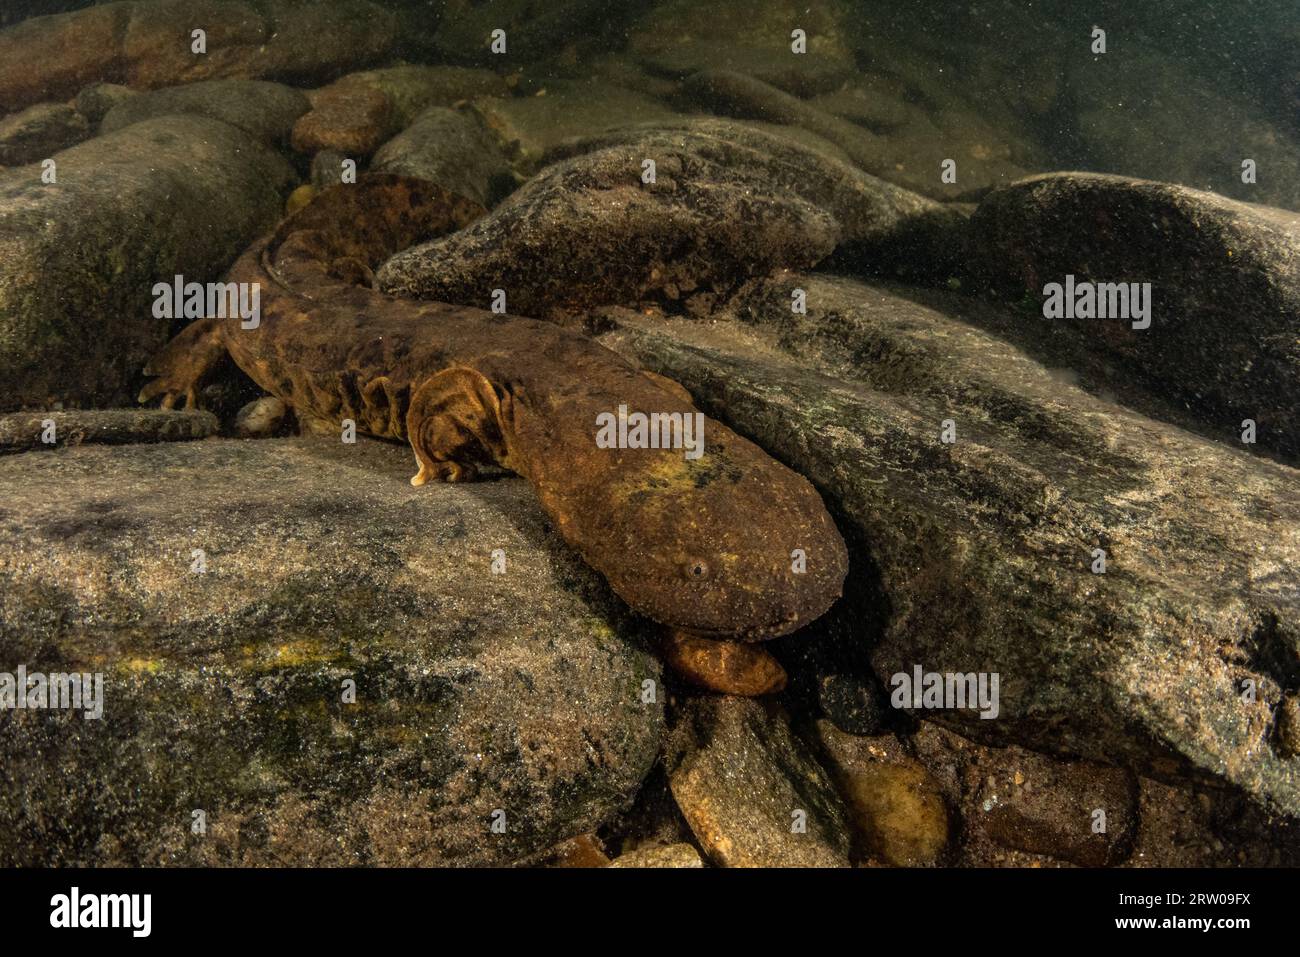 Ein aquatischer Hellbender Salamander (Cryptobranchus alleganiensis) ist die größte Amphibie Nordamerikas und eine Art, die in unberührtem Süßwasser vorkommt. Stockfoto